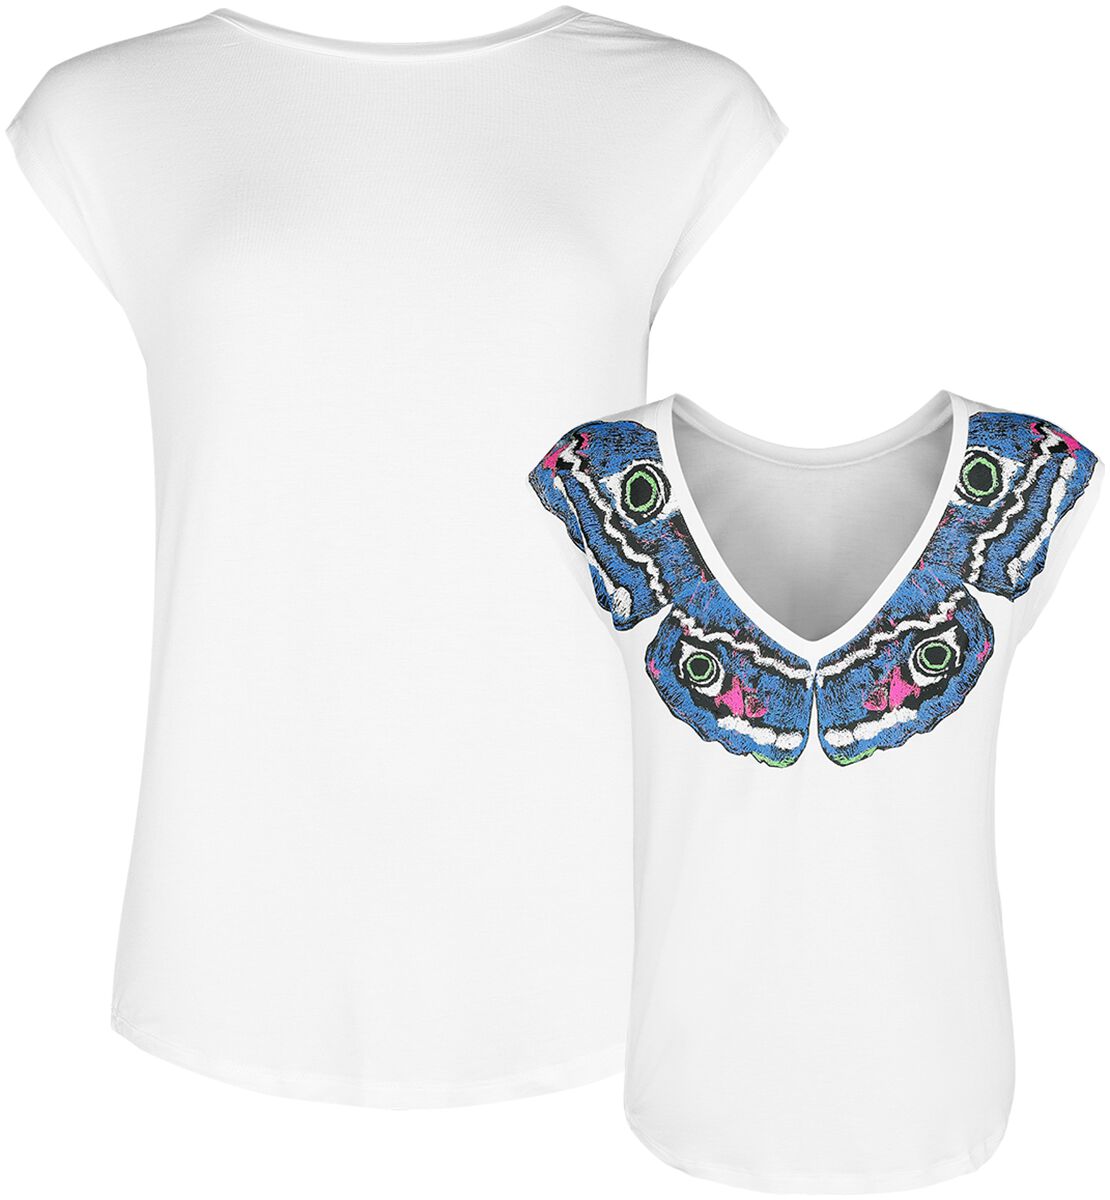 T-Shirt Manches courtes de Full Volume by EMP - T-Shirt Imprimé Papillons - S à XXL - pour Femme - b